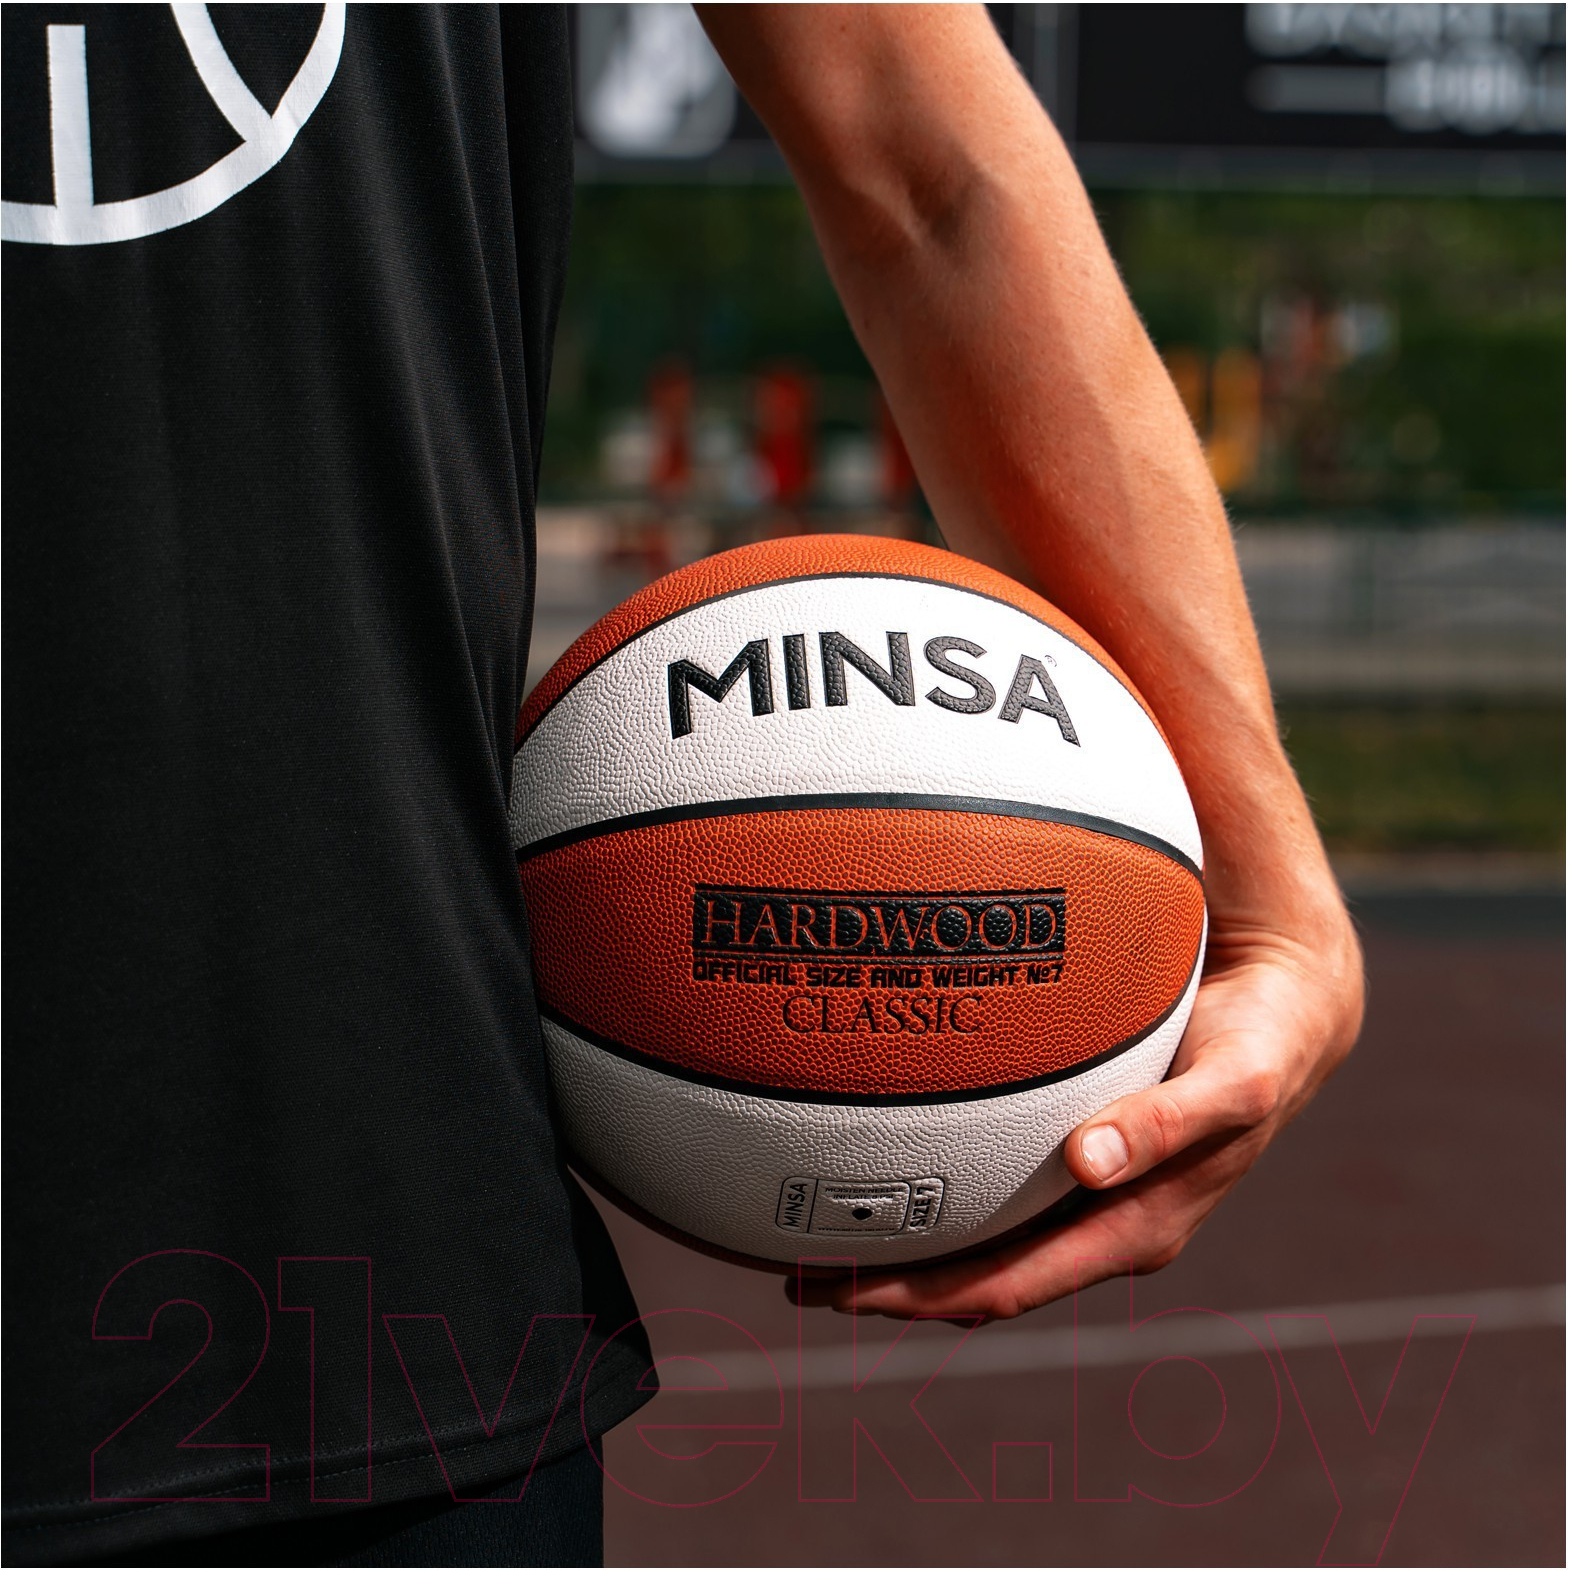 Баскетбольный мяч Minsa Hardwood Classic / 9292133